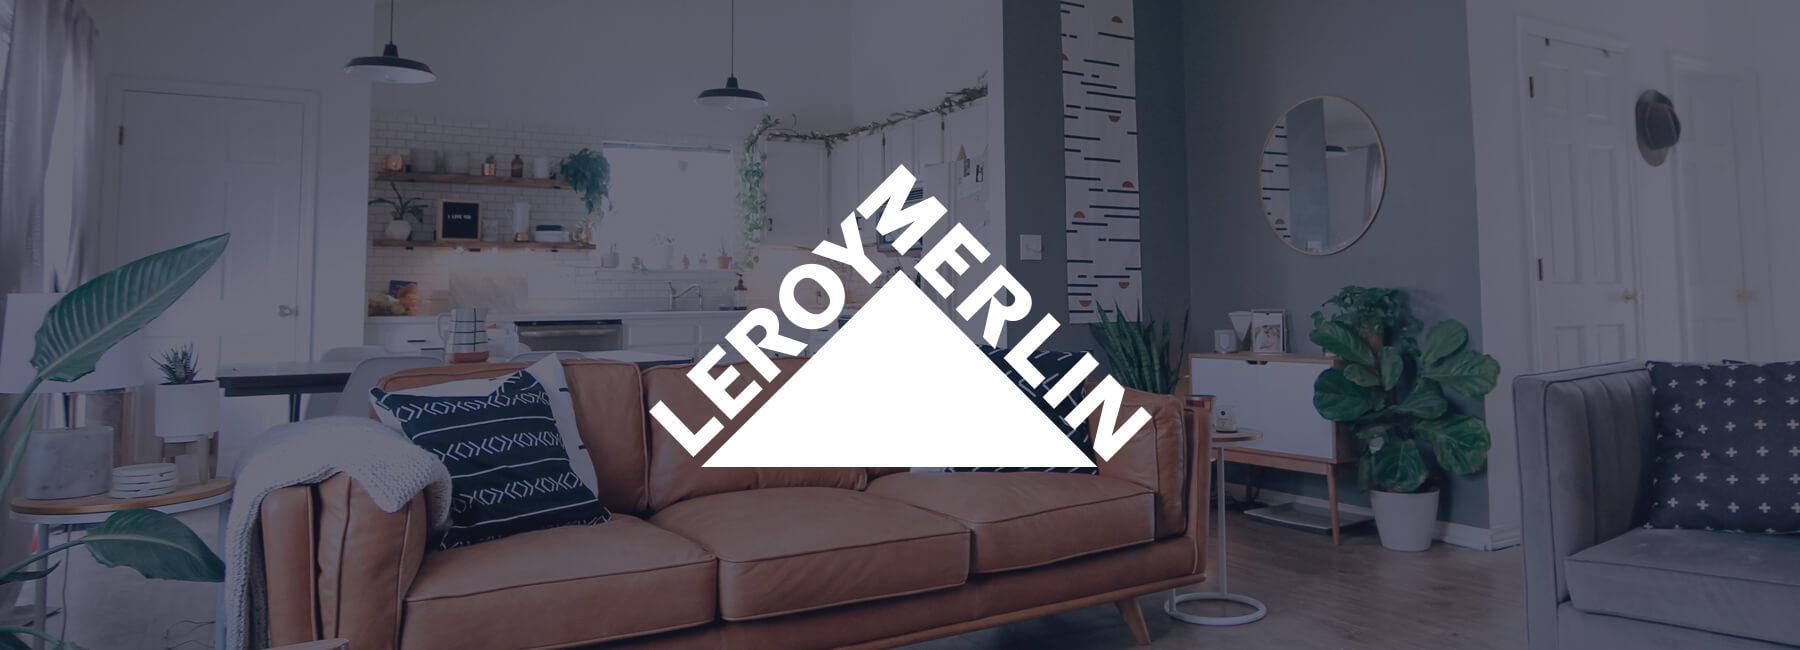 Leroy Merlin choisit Mopinion pour mieux comprendre la voix du client en ligne